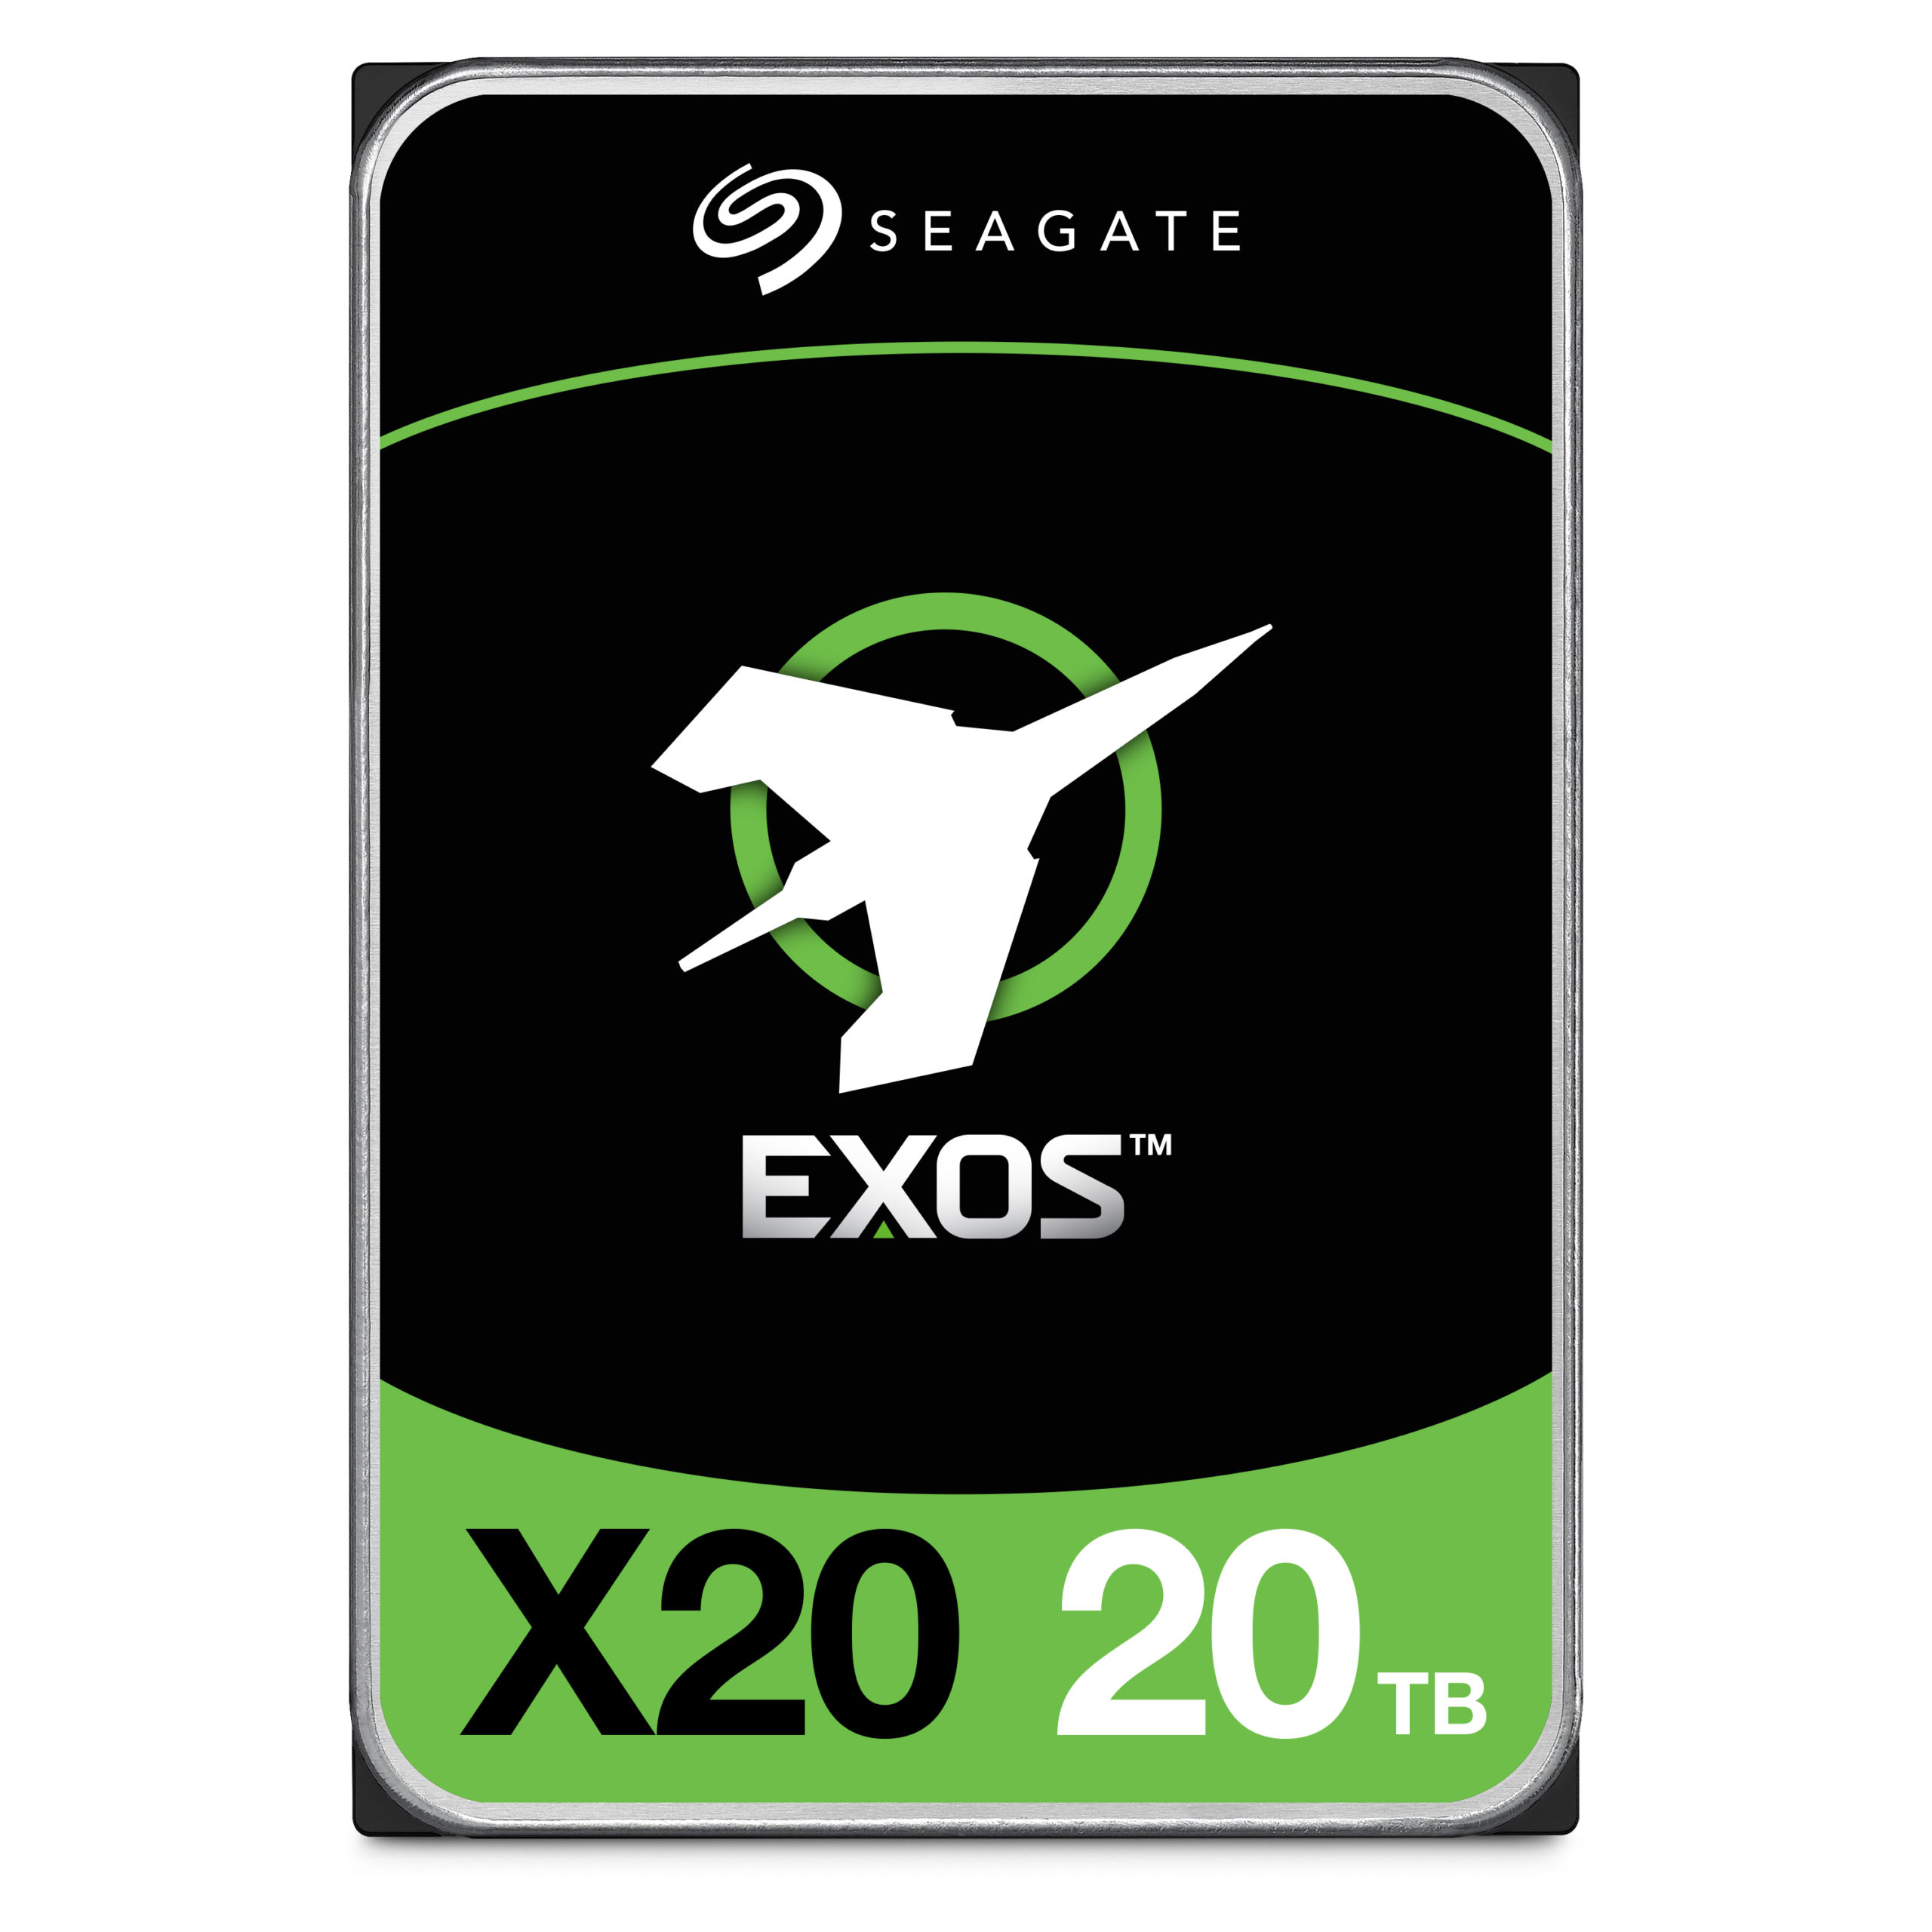 Seagate aumenta los envíos de discos duros de 20 TB en respuesta al crecimiento de los datos